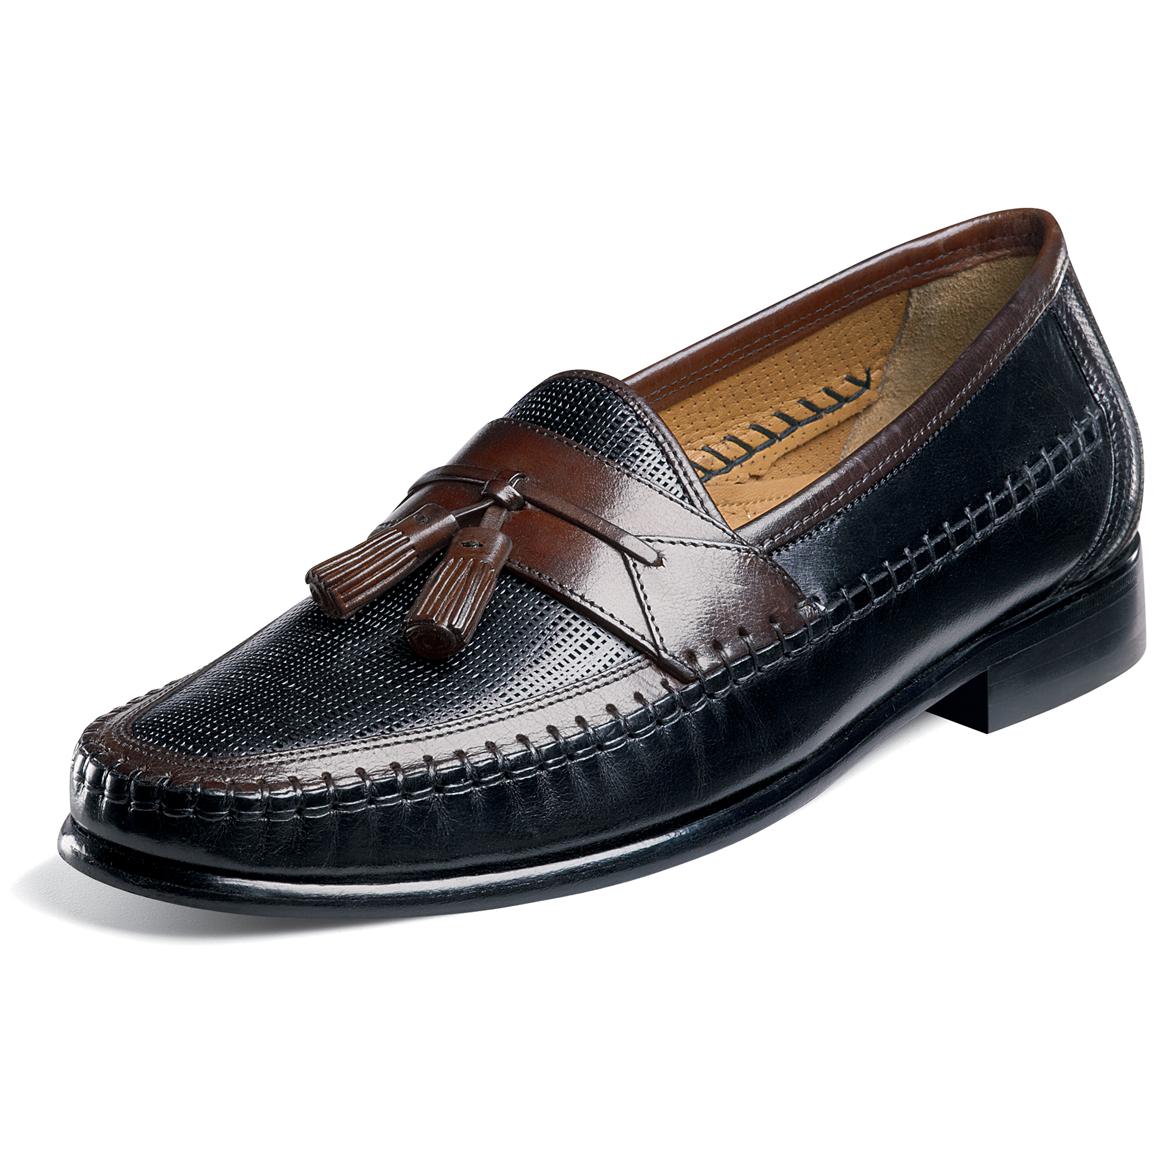 Men's Florsheim® Olamon Shoes - 185713, Dress Shoes at Sportsman's Guide